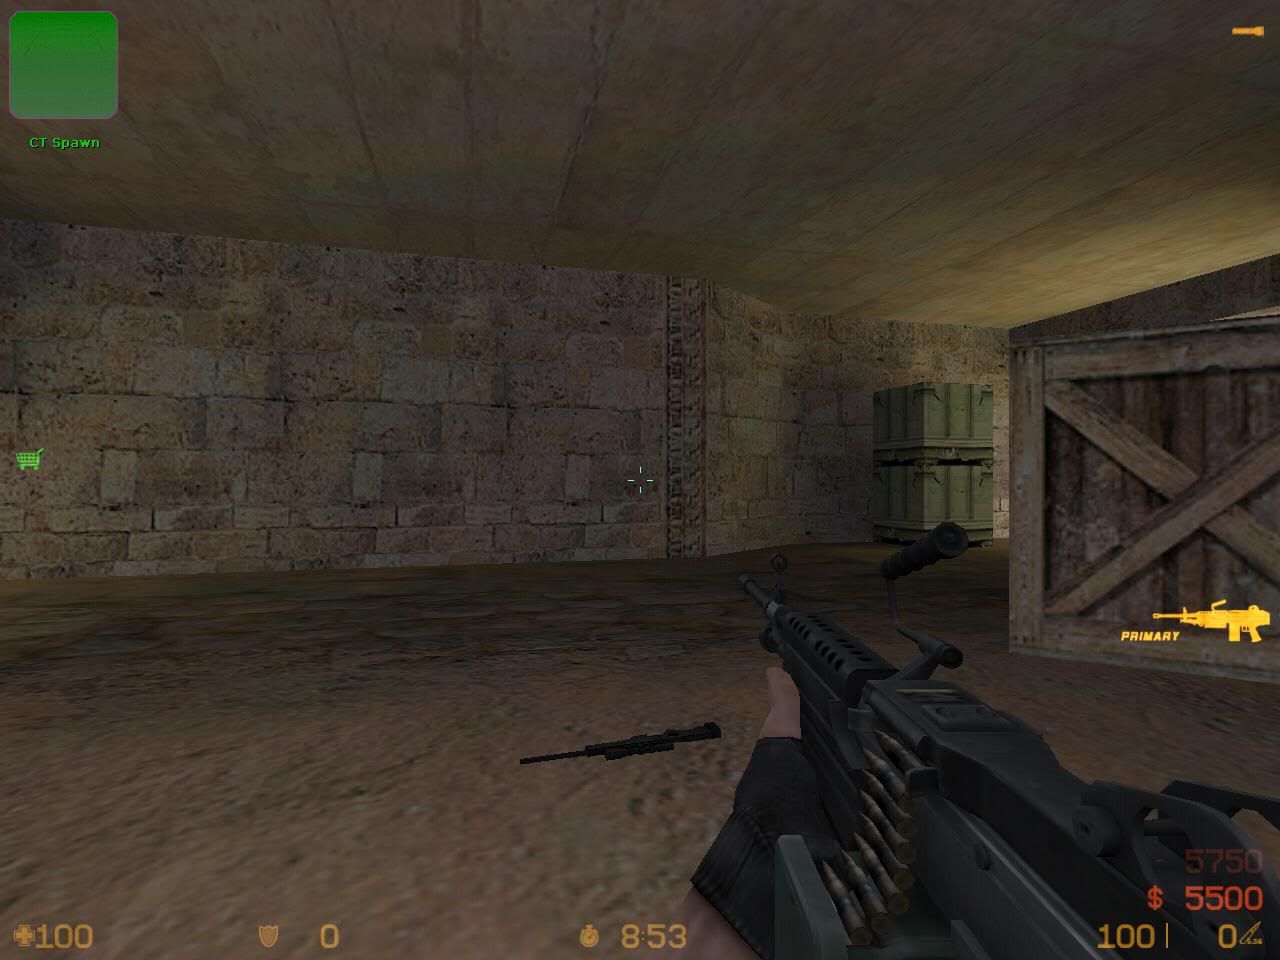      1.6  Counter-Strike United v1 de_dust20019.jpg